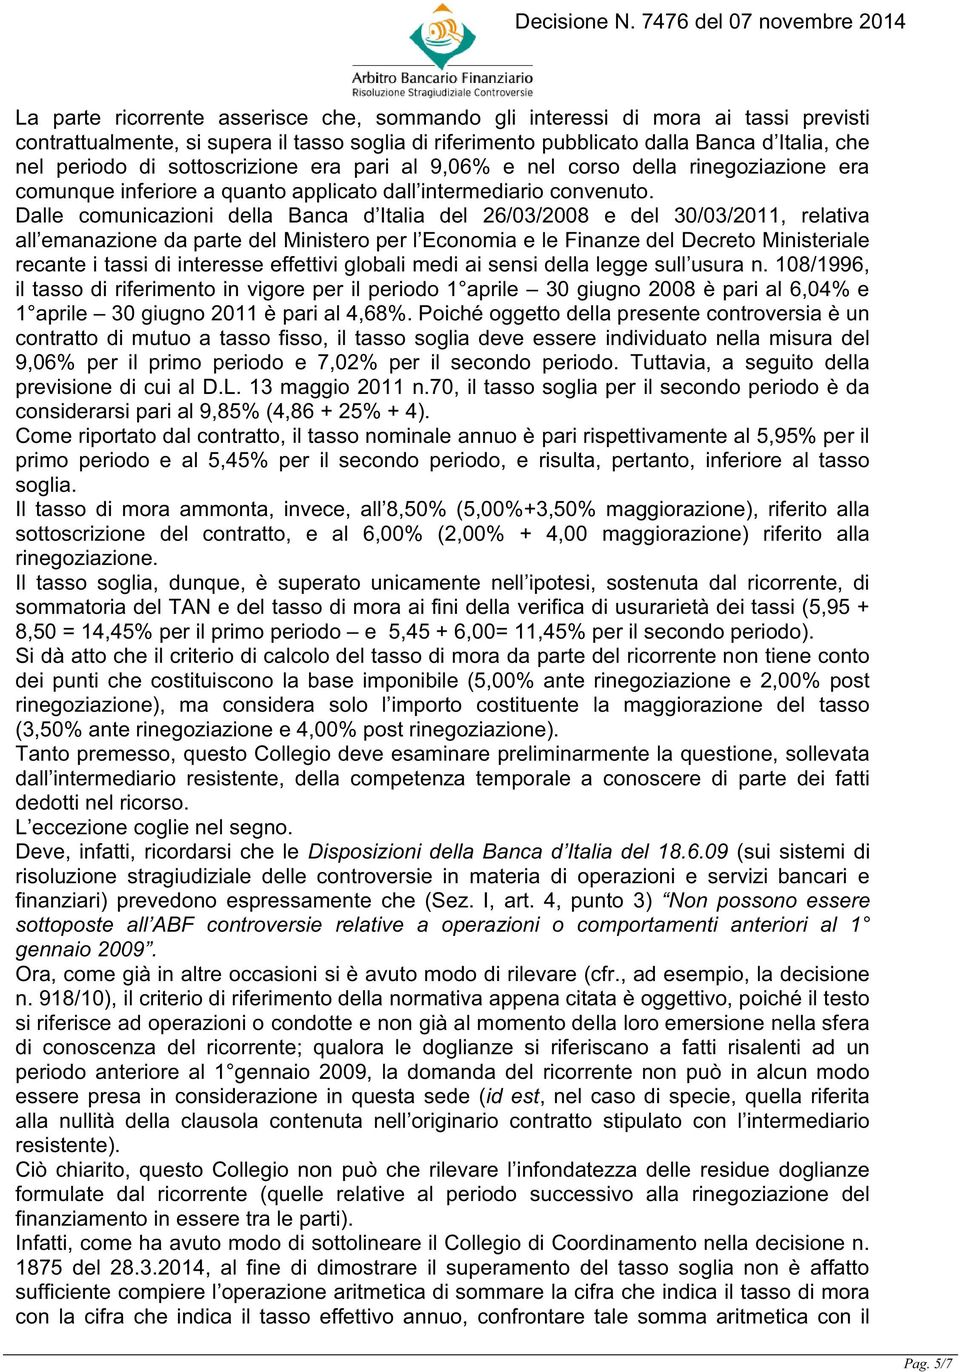 Dalle comunicazioni della Banca d Italia del 26/03/2008 e del 30/03/2011, relativa all emanazione da parte del Ministero per l Economia e le Finanze del Decreto Ministeriale recante i tassi di